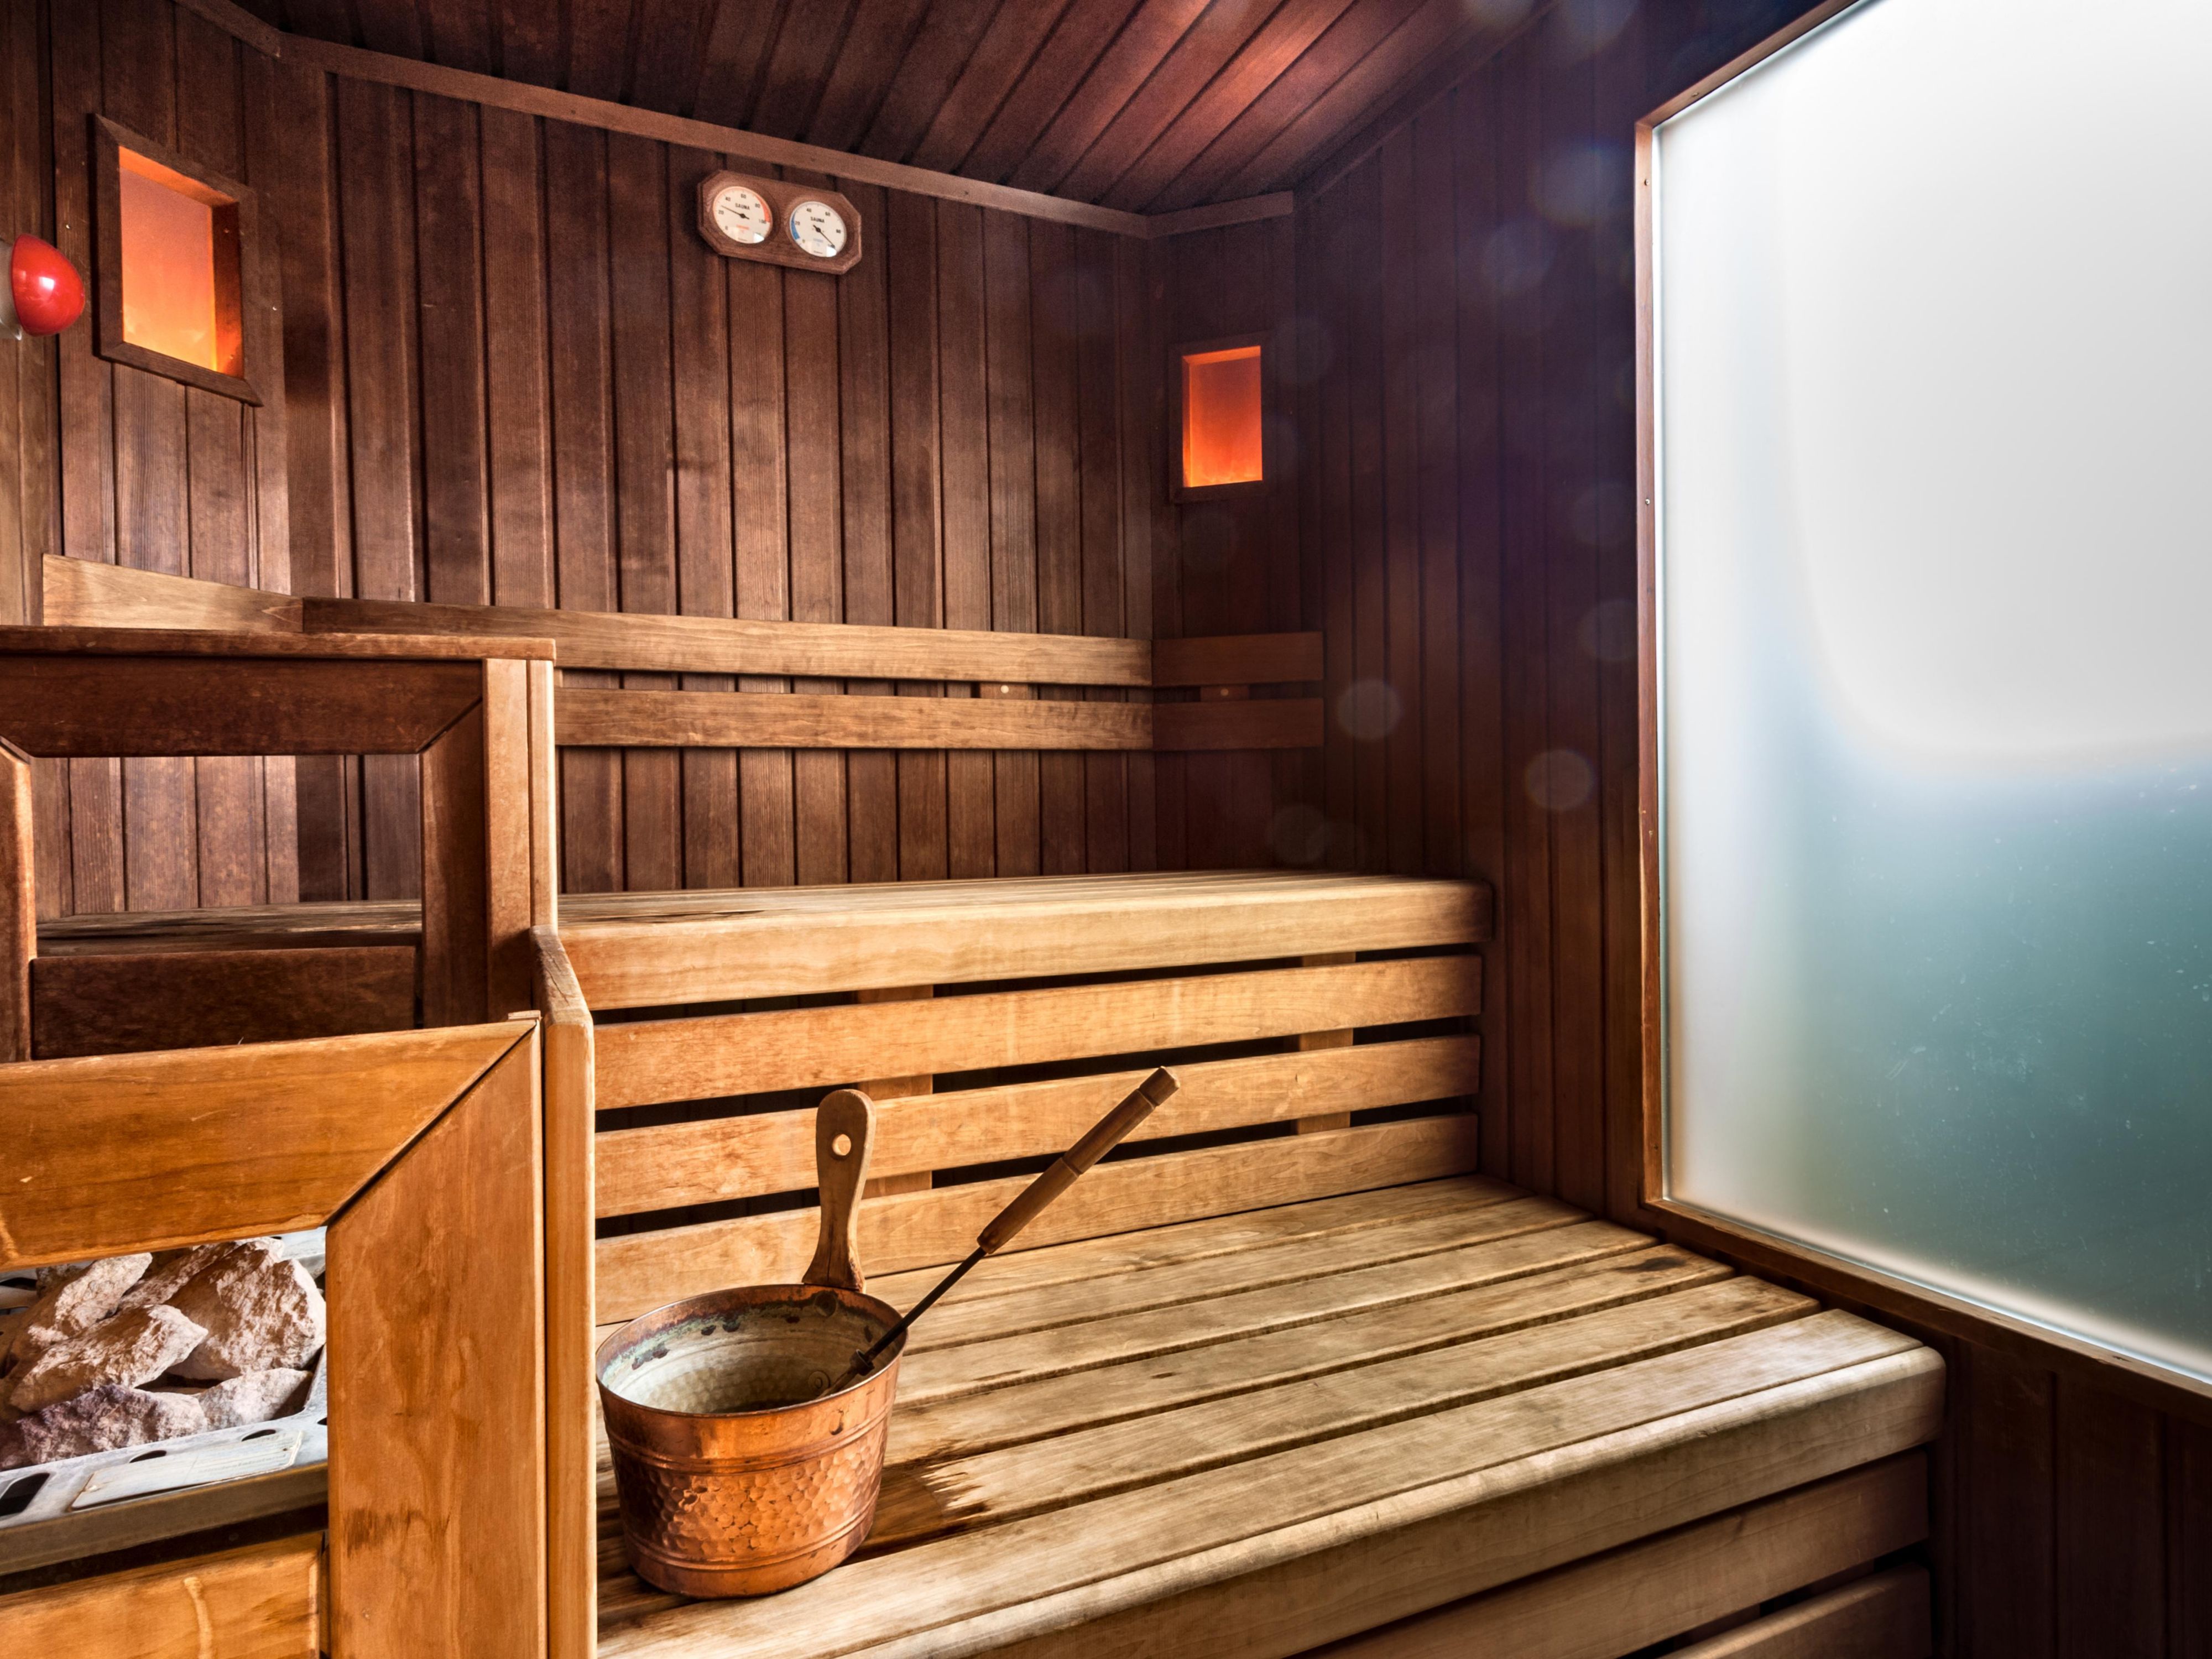 Concedetevi una sauna rilassante o un bagno turco nell’area wellness al 9° piano con vista mozzafiato sul panorama. E per gli amanti della forma è disponibile anche un fitness corner nella stessa area. Tutti i servizi sono gratuiti